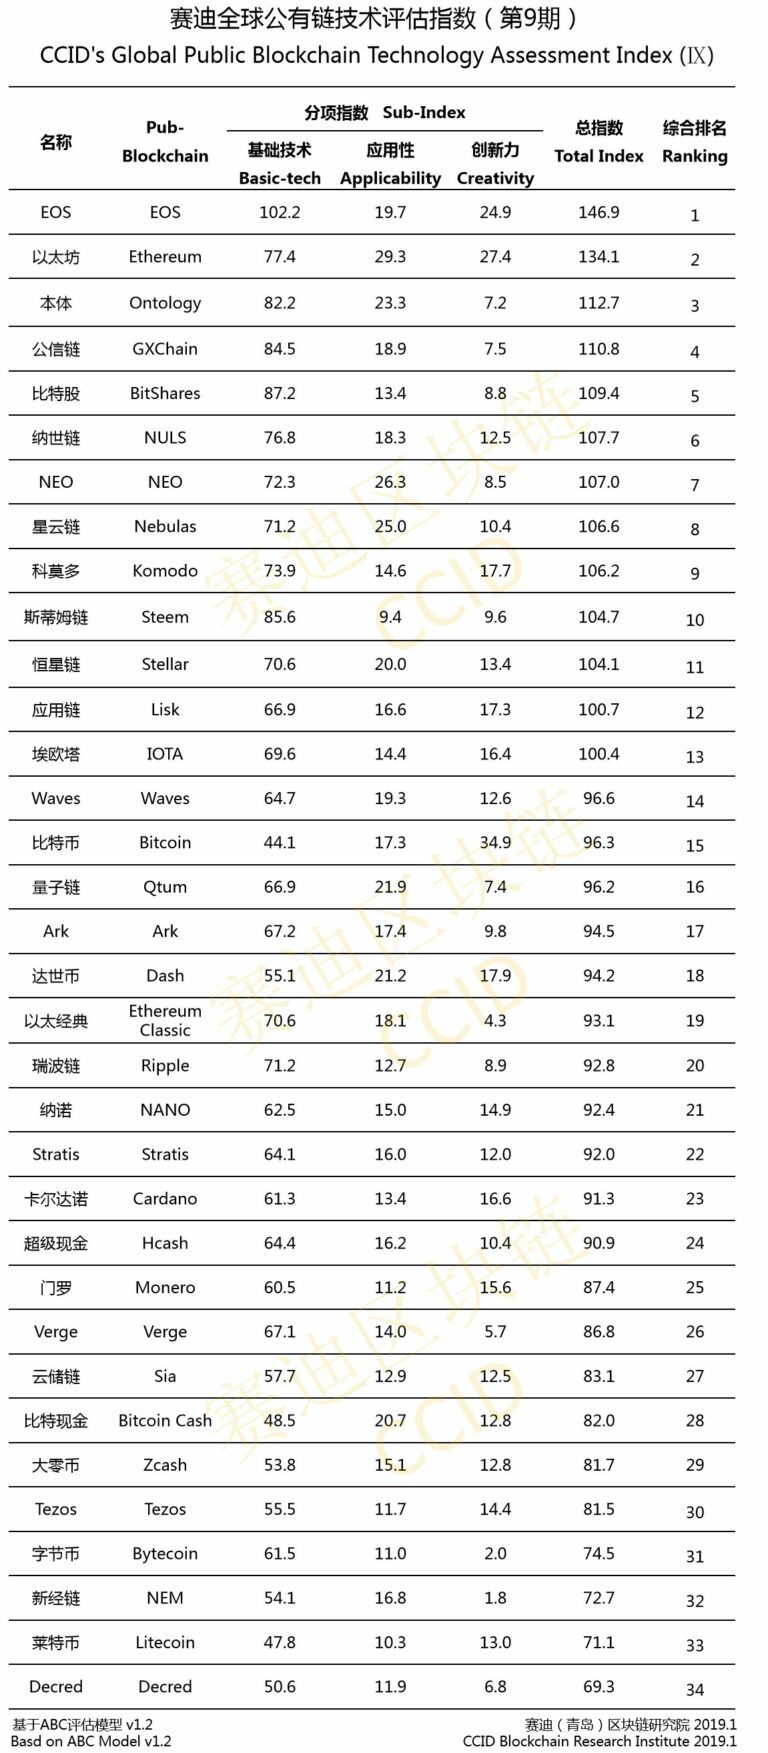 Биткоин (BTC) не попал в топ-10 китайского рейтинга криптовлают CCID